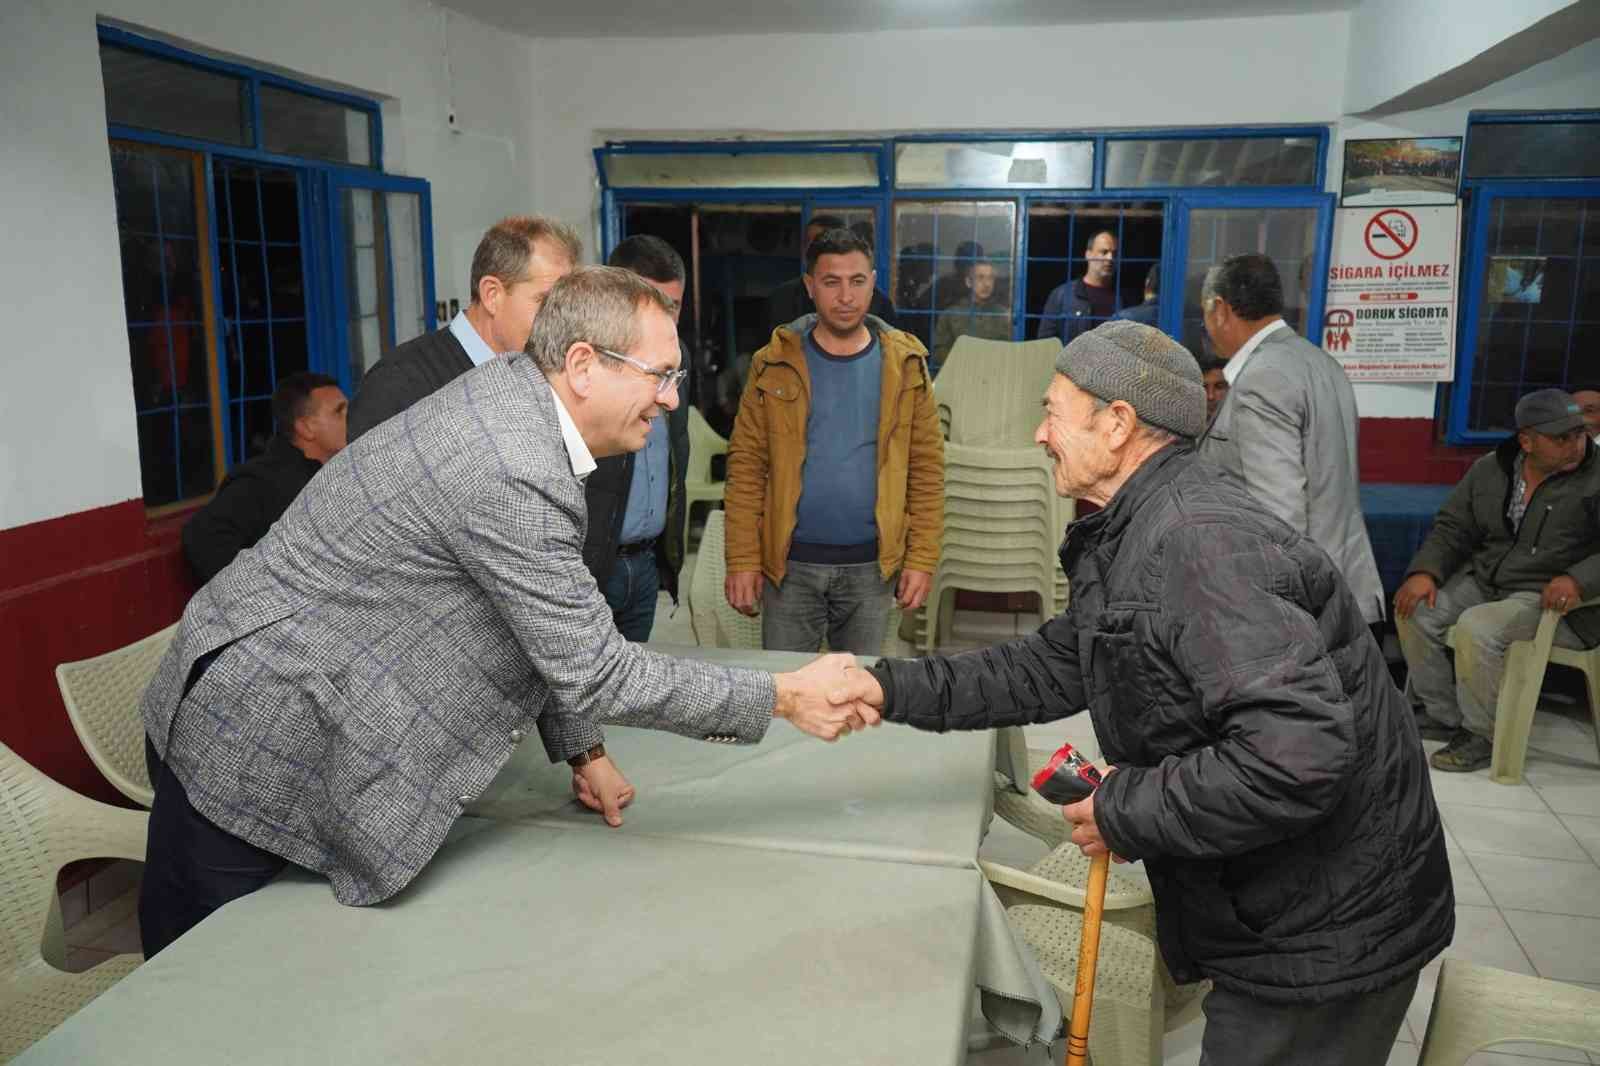 Ayvalık Belediye Başkanı Ergin, mahalle ziyaretlerinde coşkuyla karşılanıyor